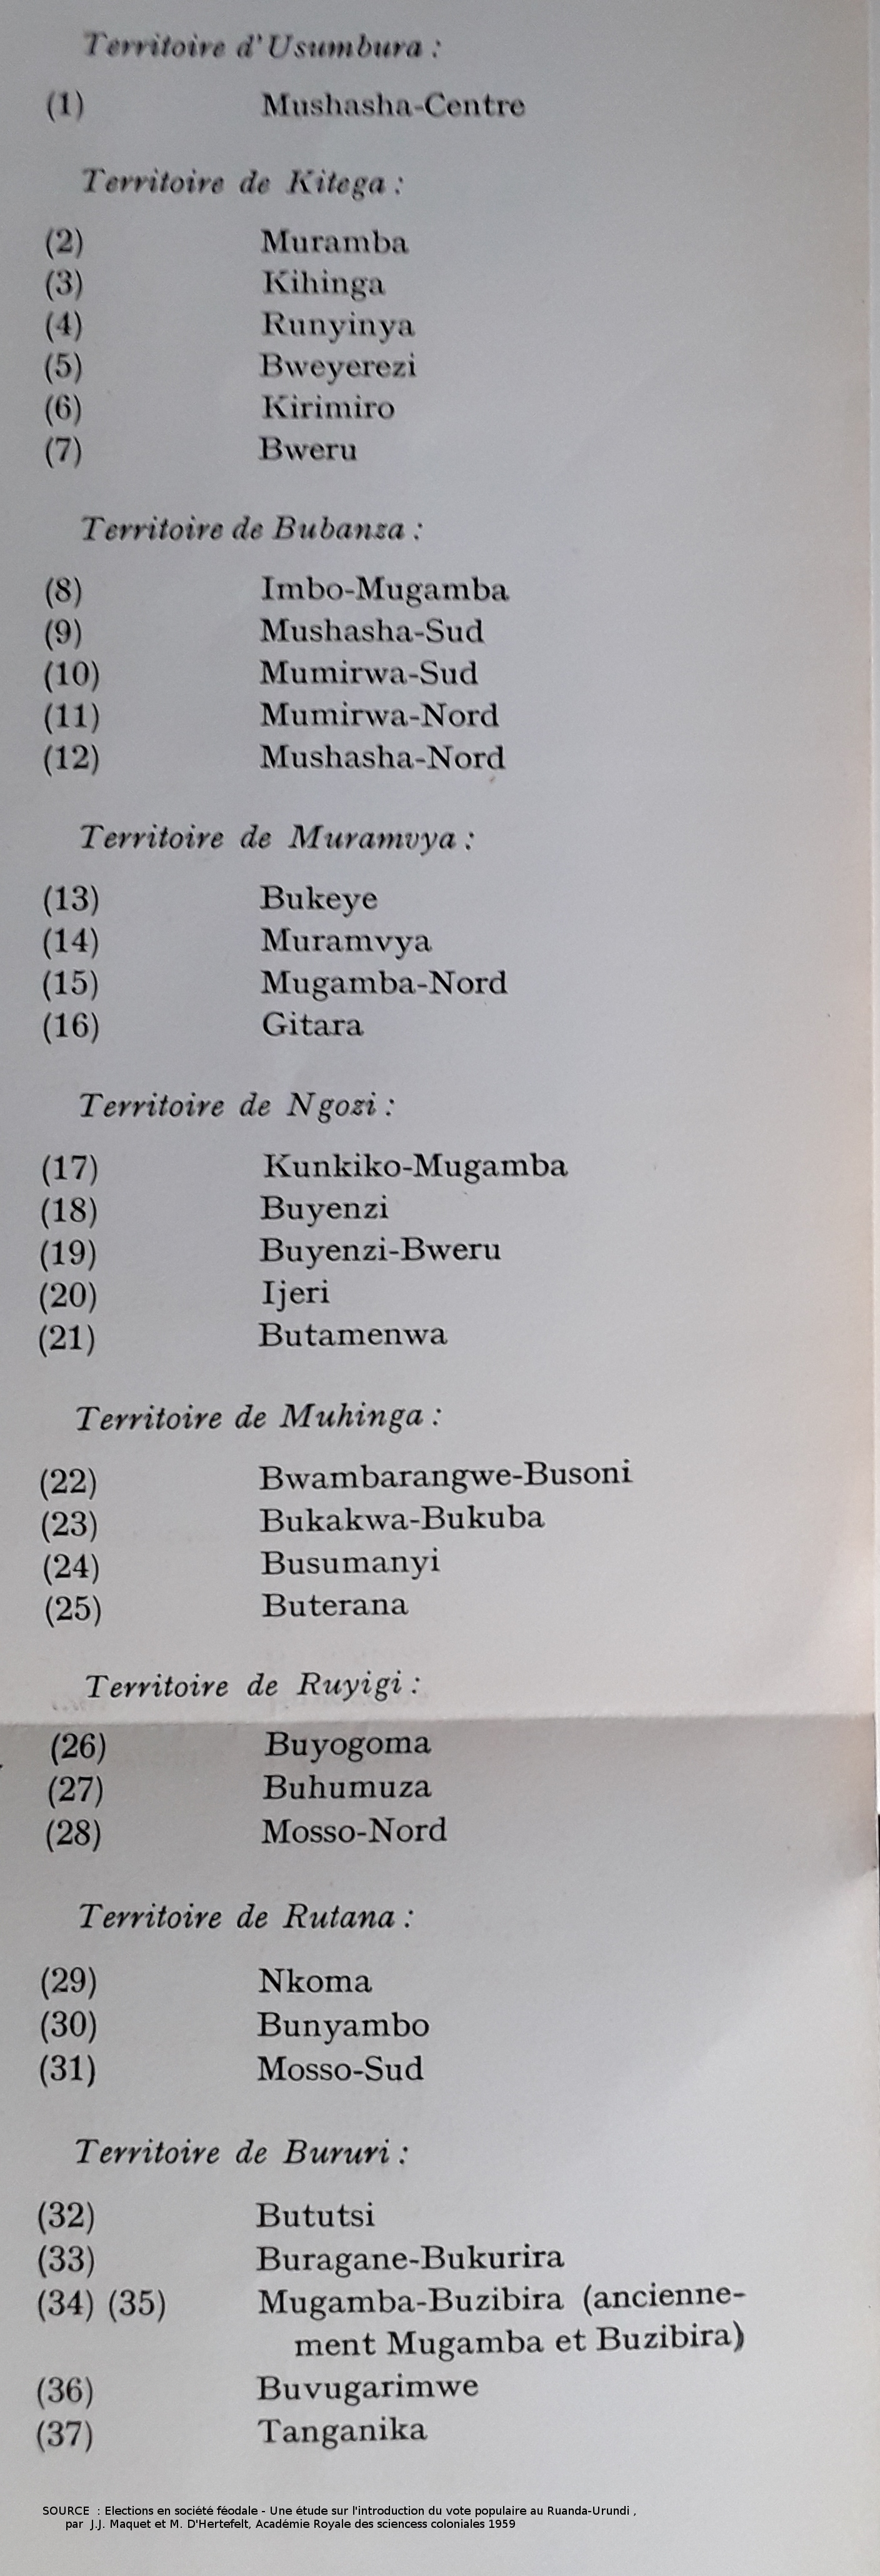 Burundi : Réforme de la fiscalité communale ( Photo : Academie royale des sciences coloniales 1959 )